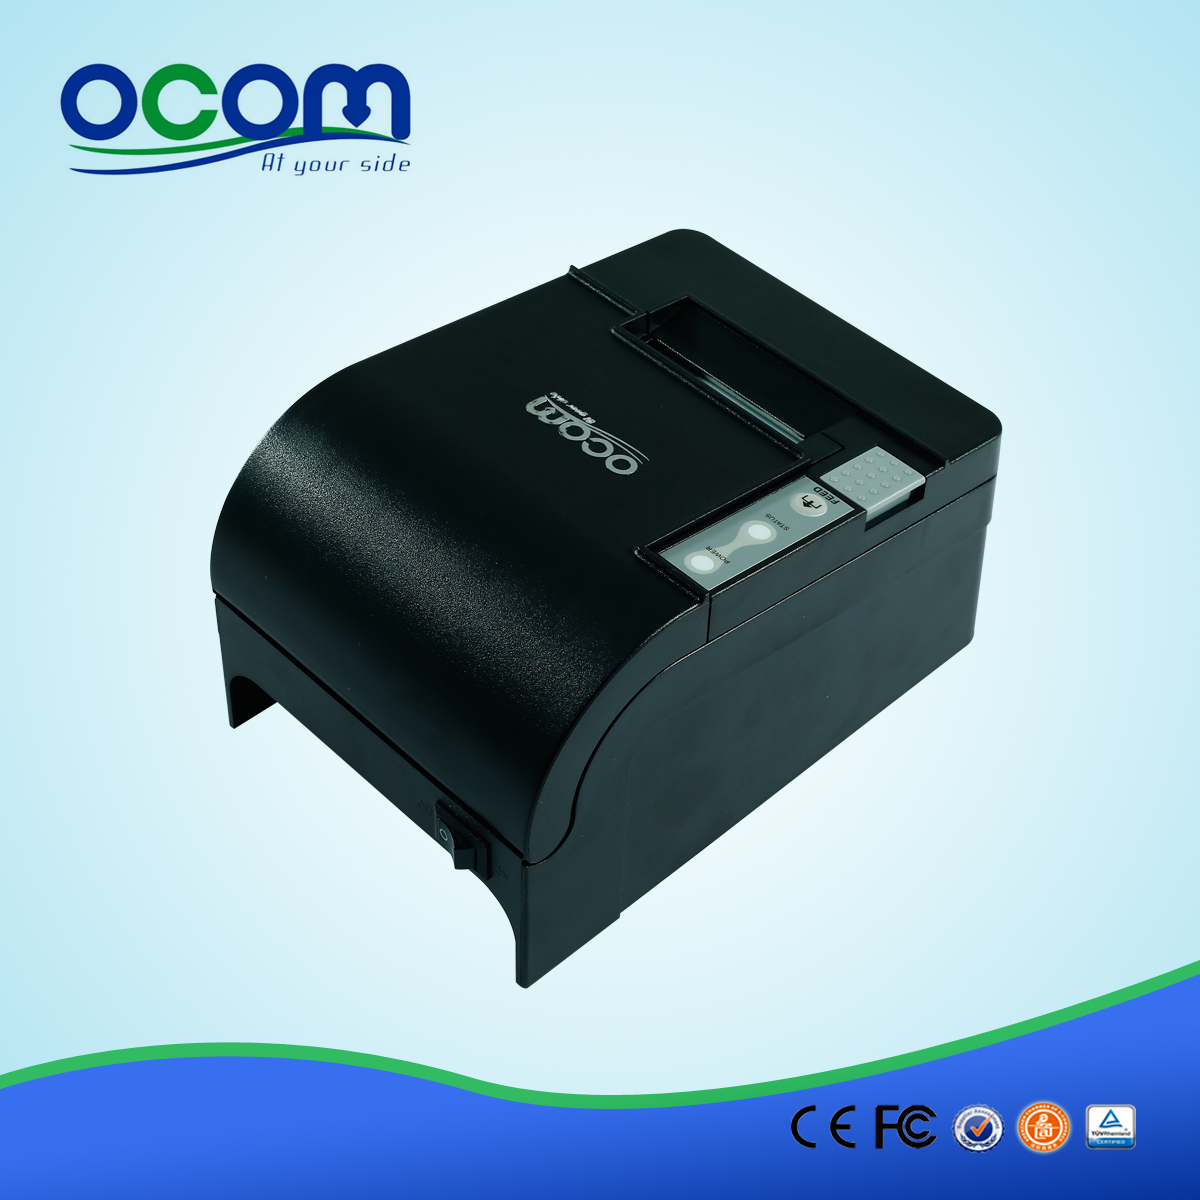 OCPP-58C Kleiner direkter Thermodrucker Preis mit optionaler Schnittstelle